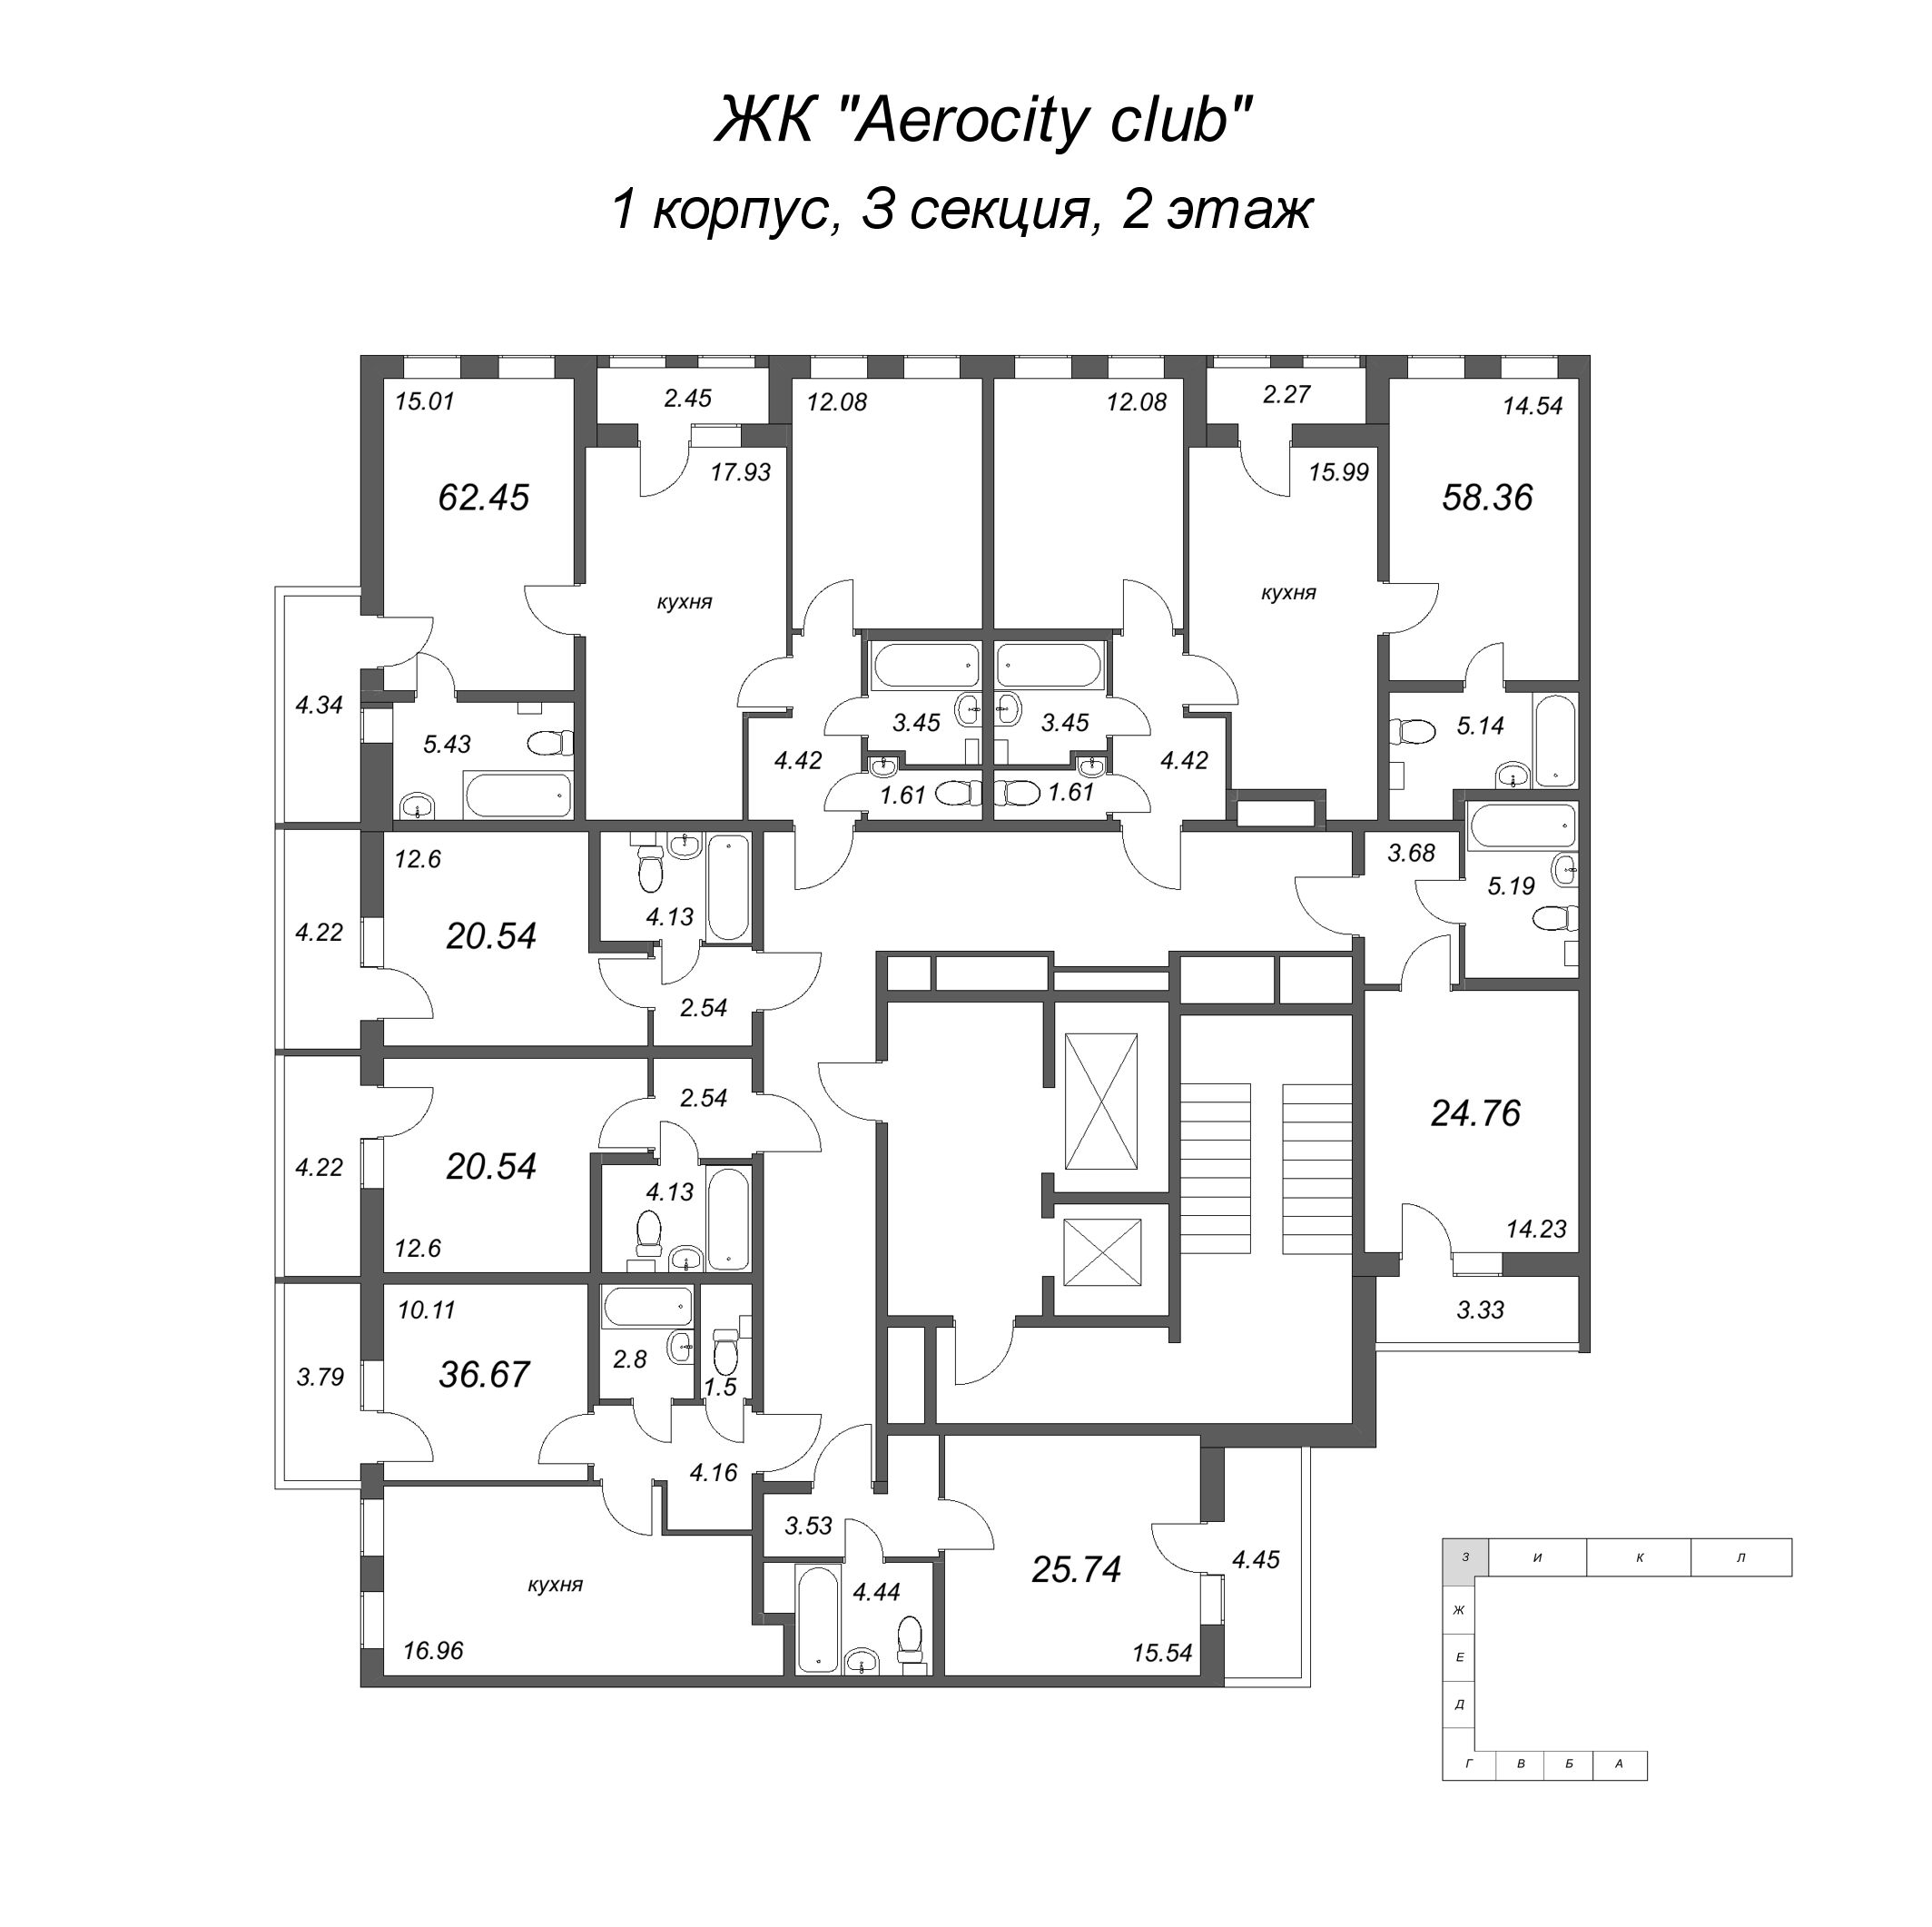 3-комнатная (Евро) квартира, 58.36 м² в ЖК "AEROCITY Club" - планировка этажа